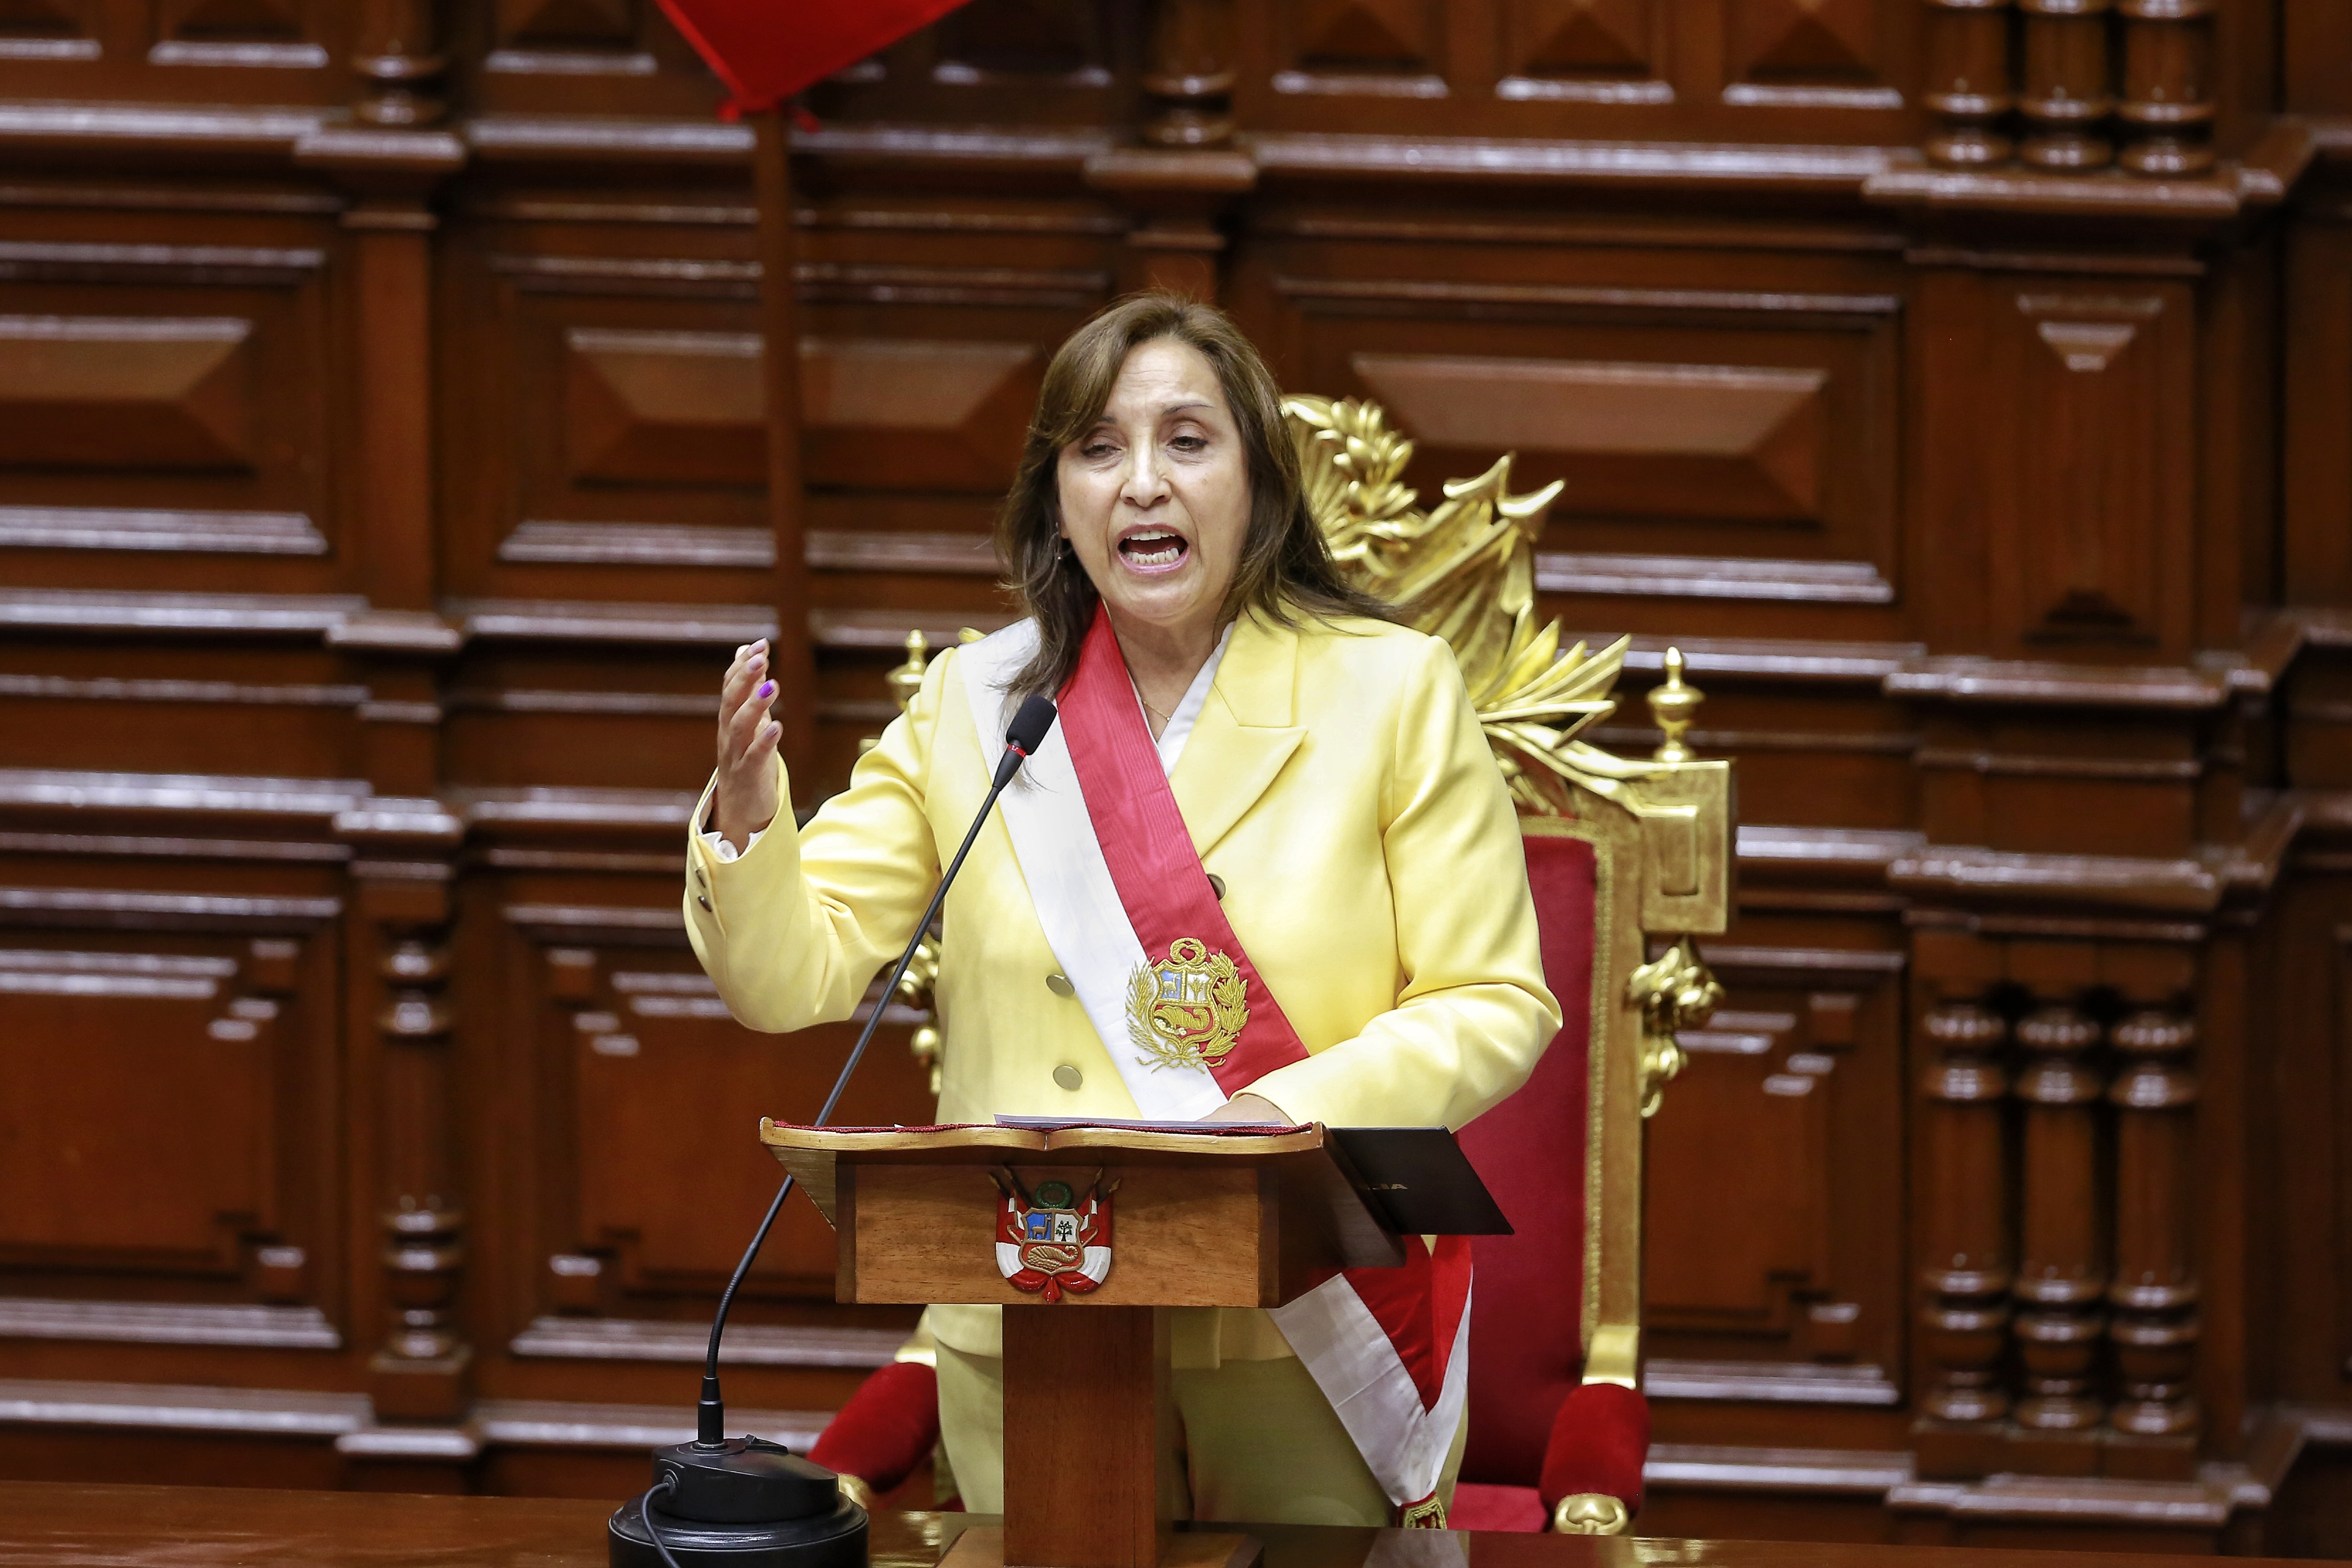 Un gabinete técnico y sin políticos de peso, la apuesta de Dina Boluarte para Perú